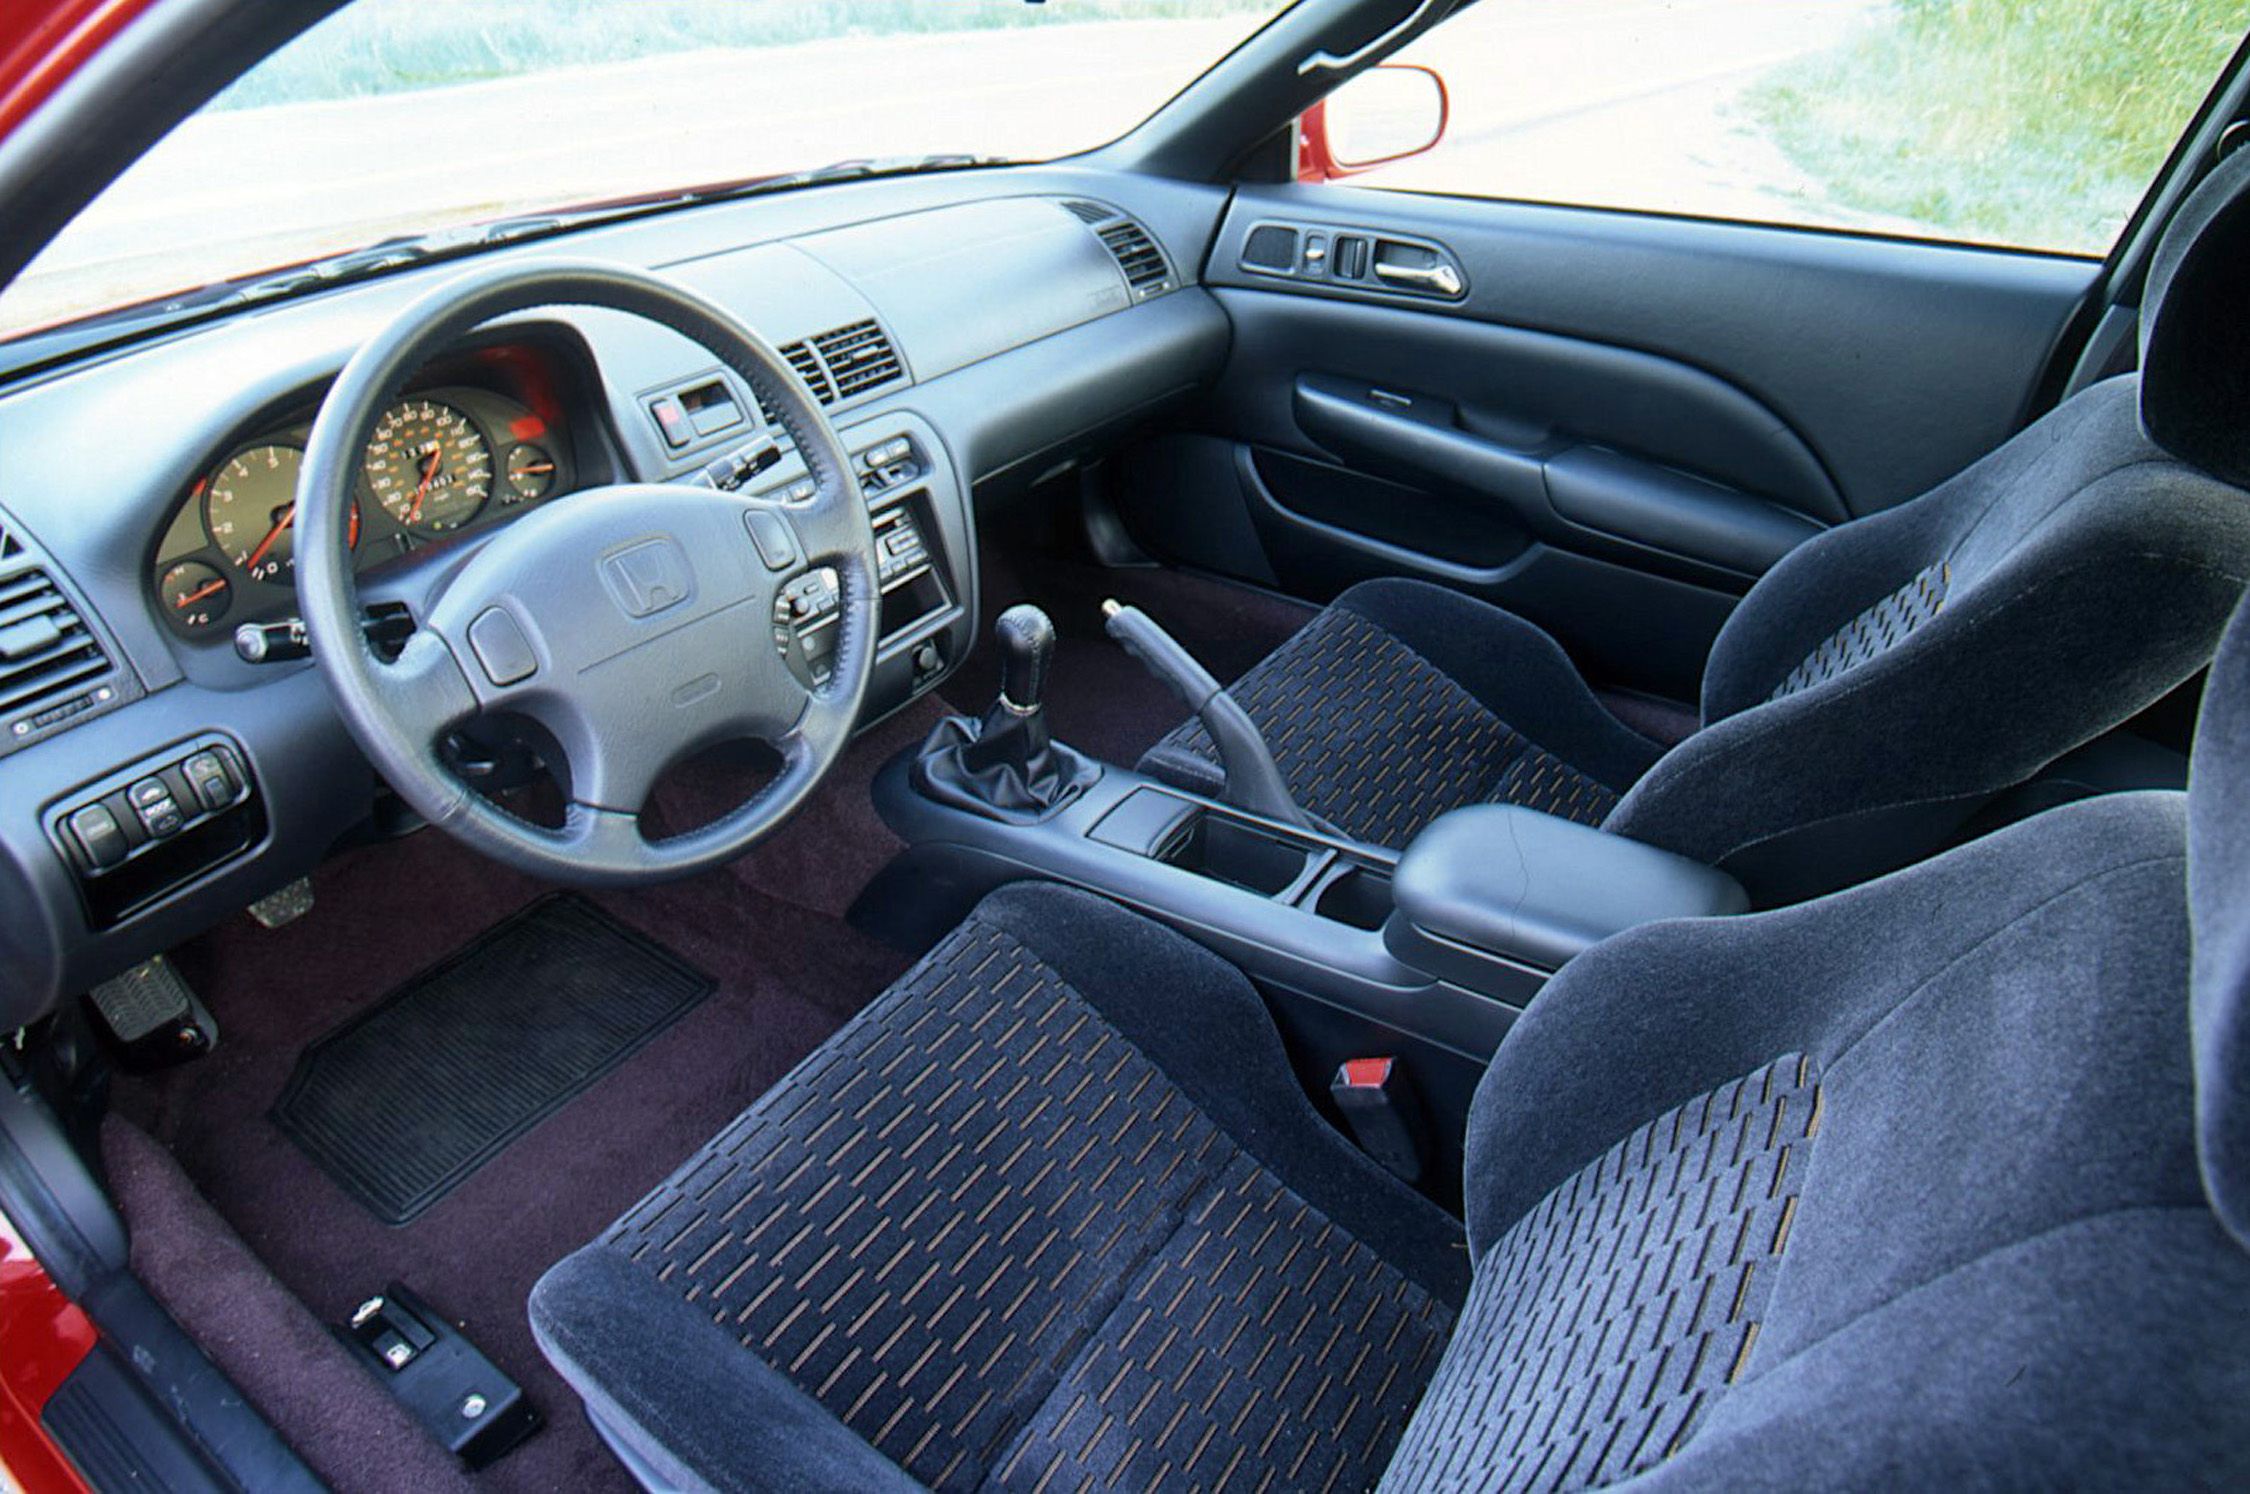 1995 honda prelude interior